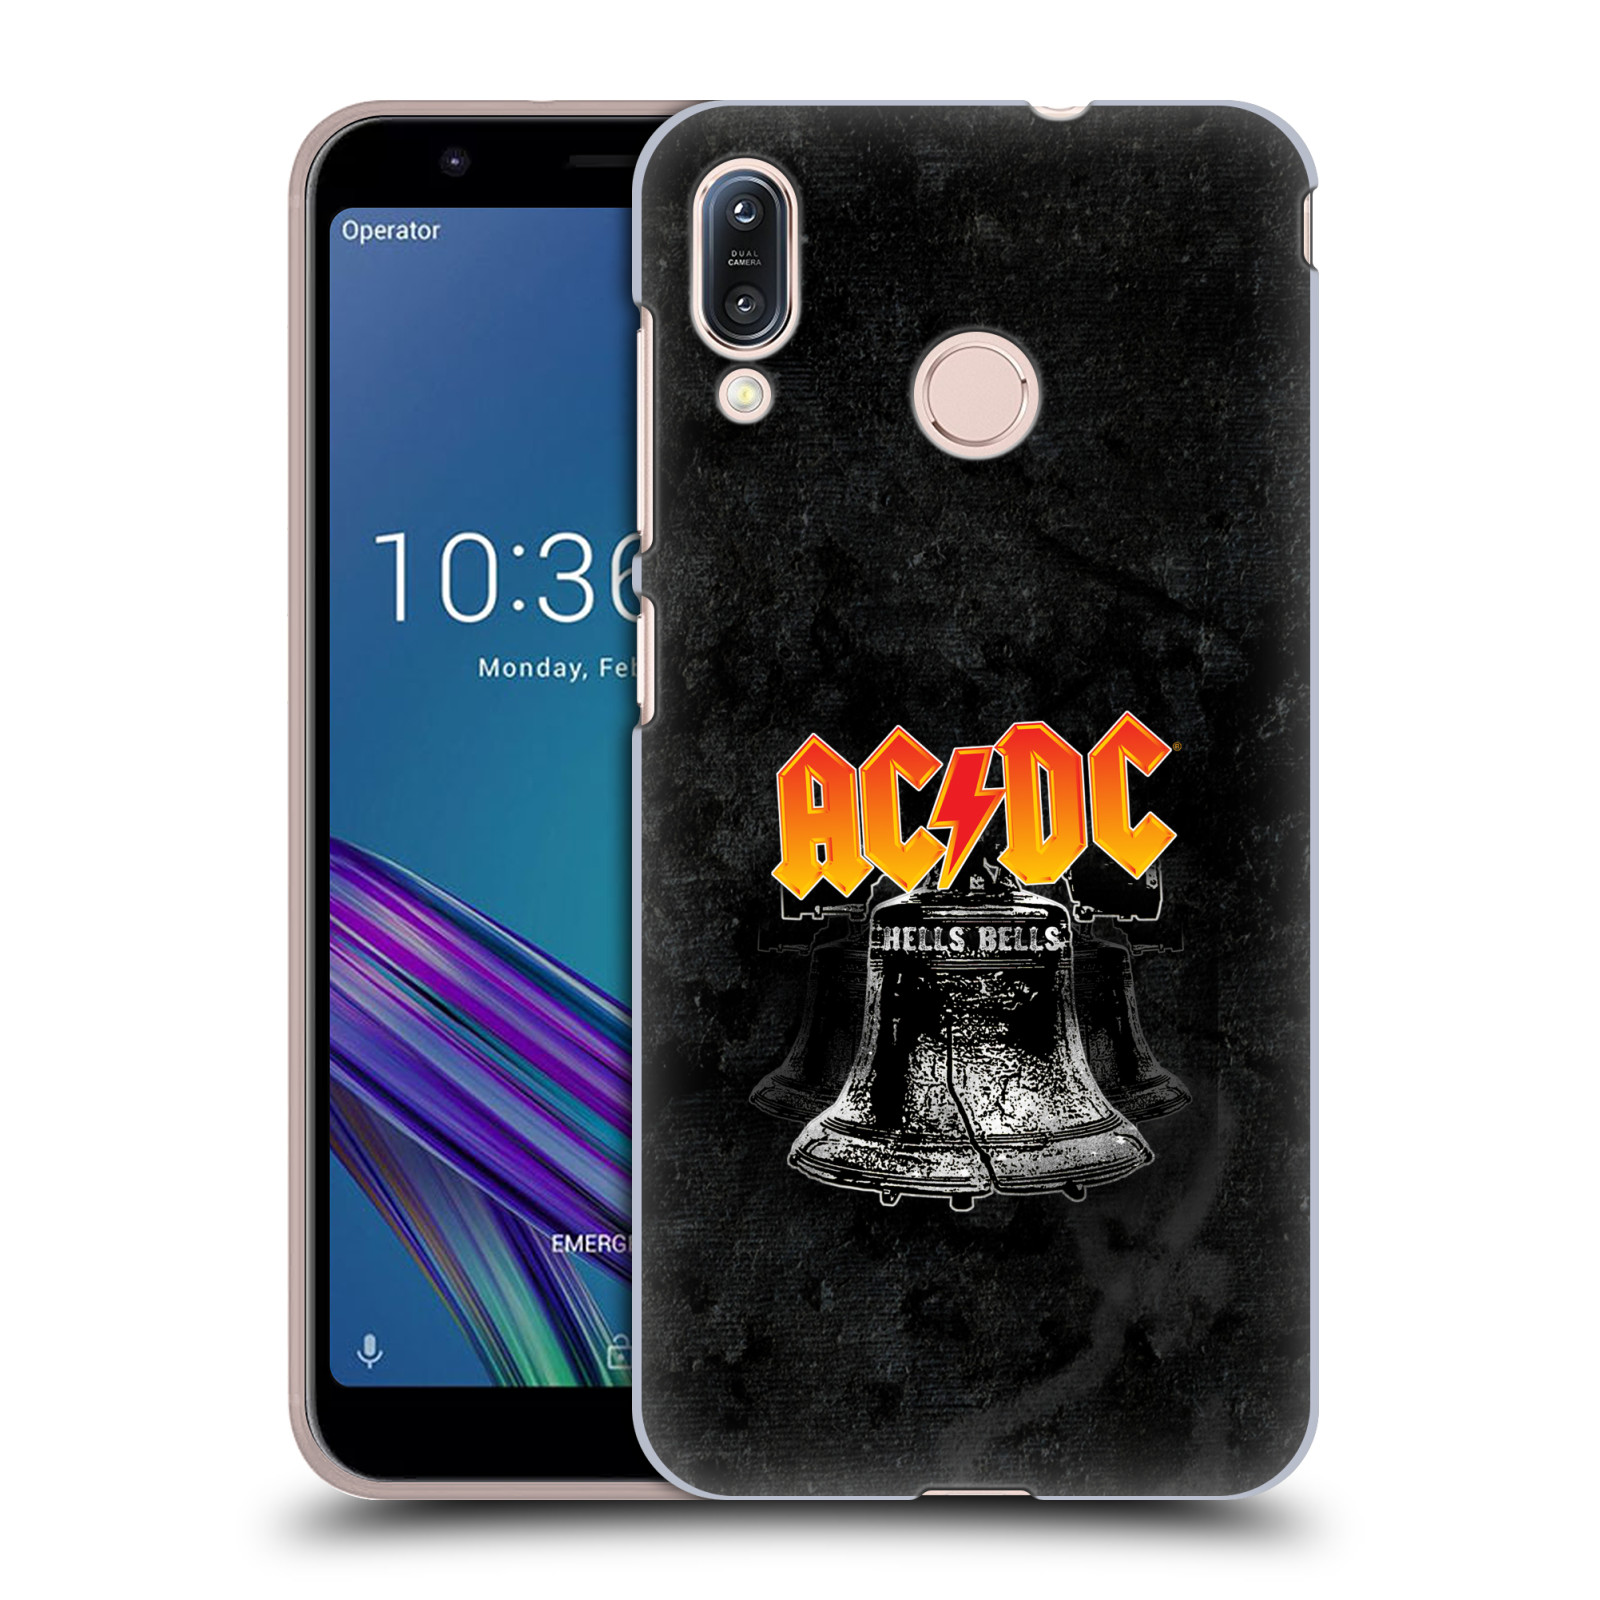 Plastové pouzdro na mobil Asus Zenfone Max M1 ZB555KL - Head Case - AC/DC Hells Bells